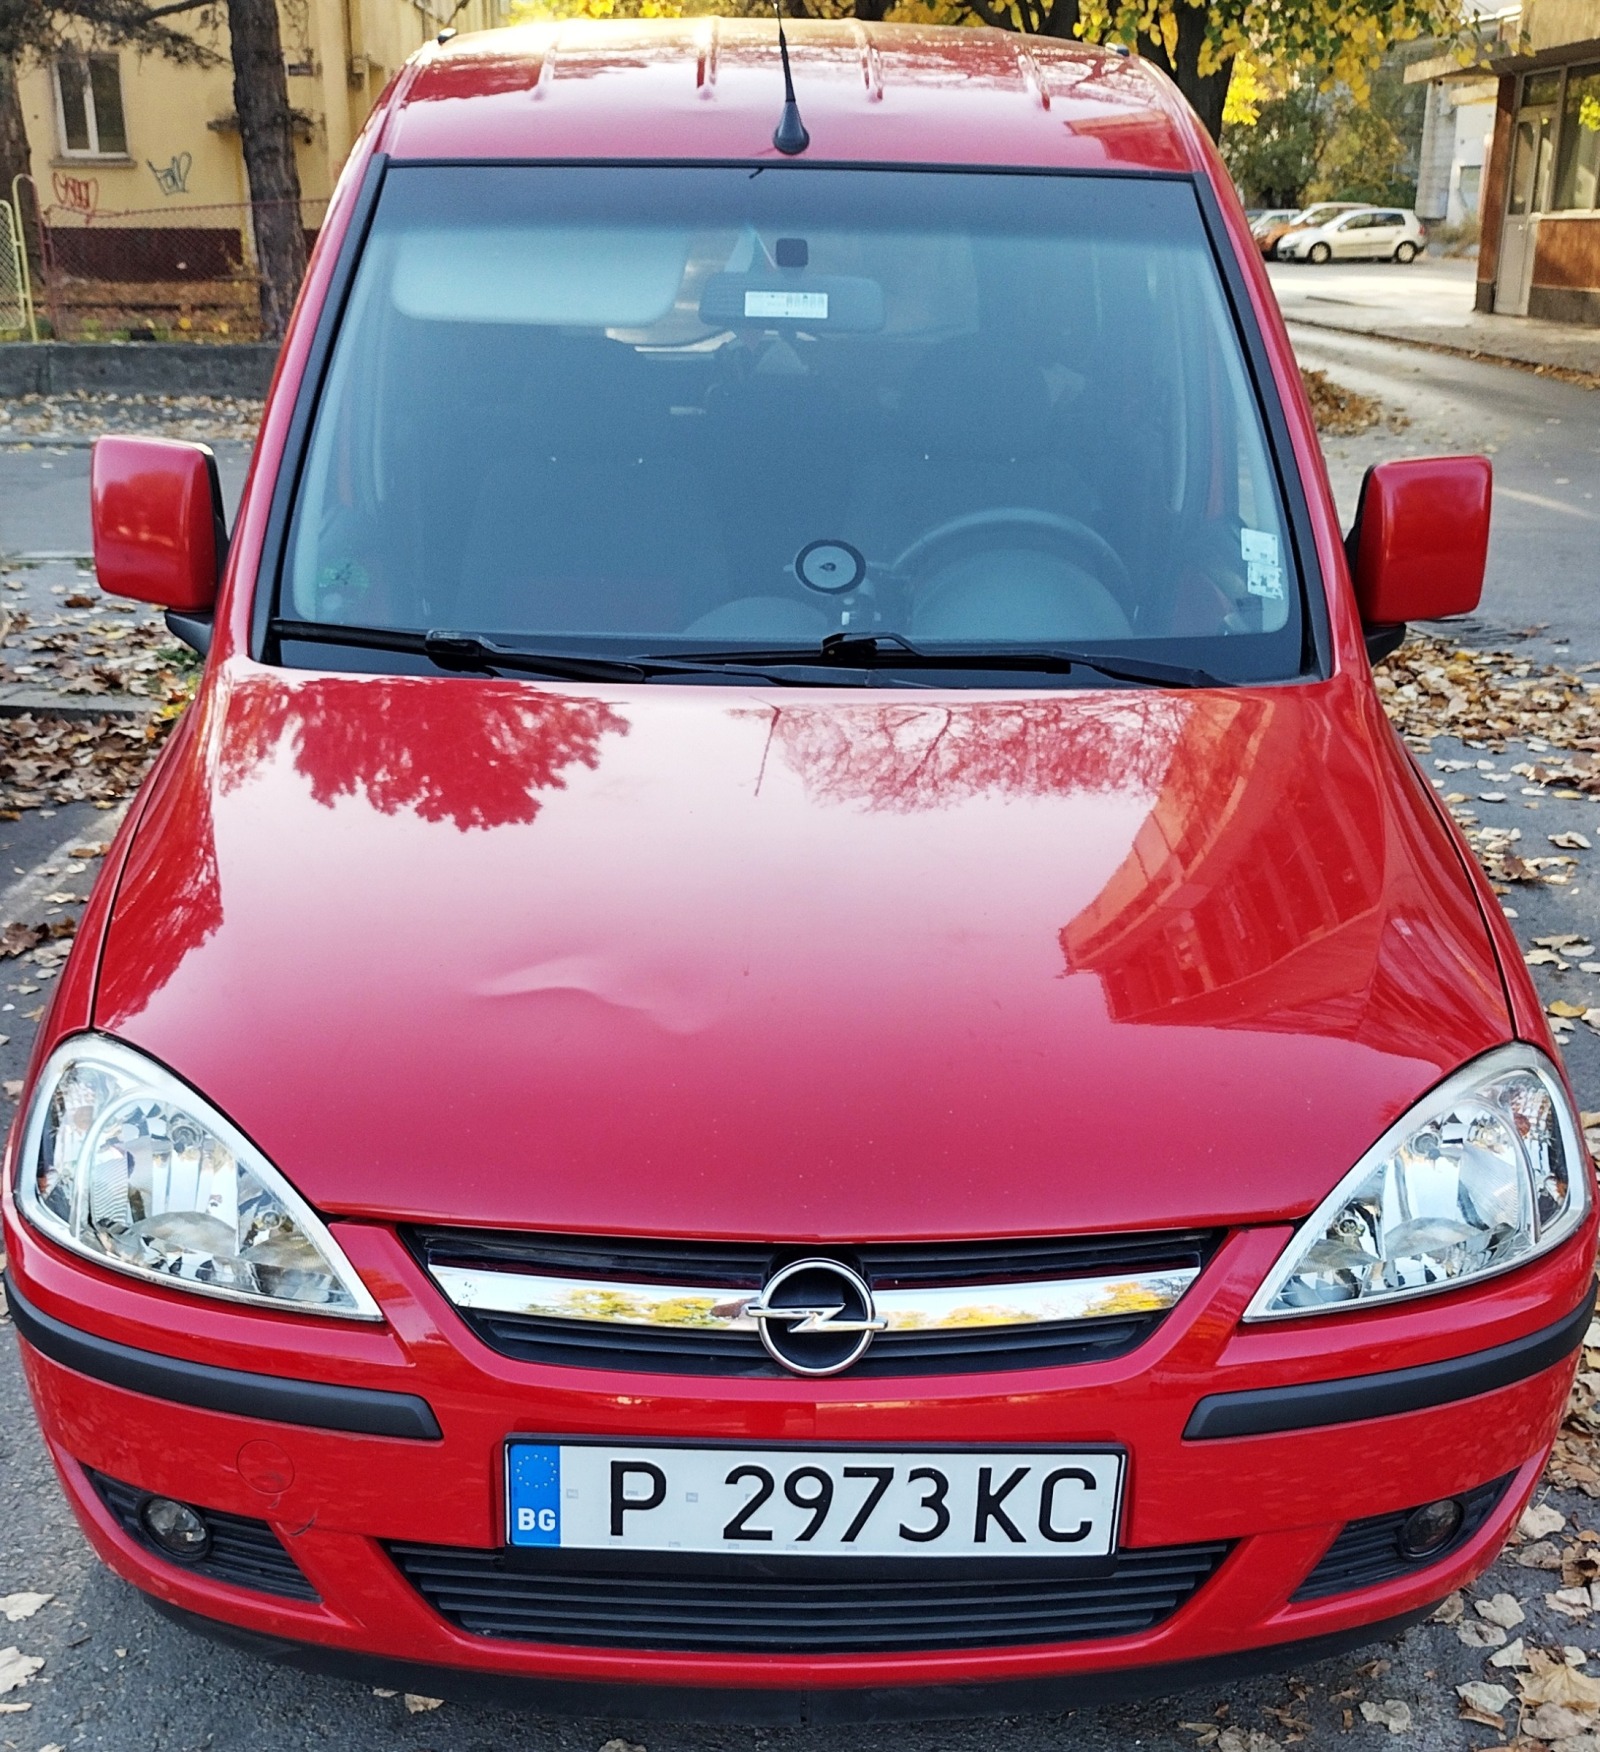 Opel Combo  - изображение 1